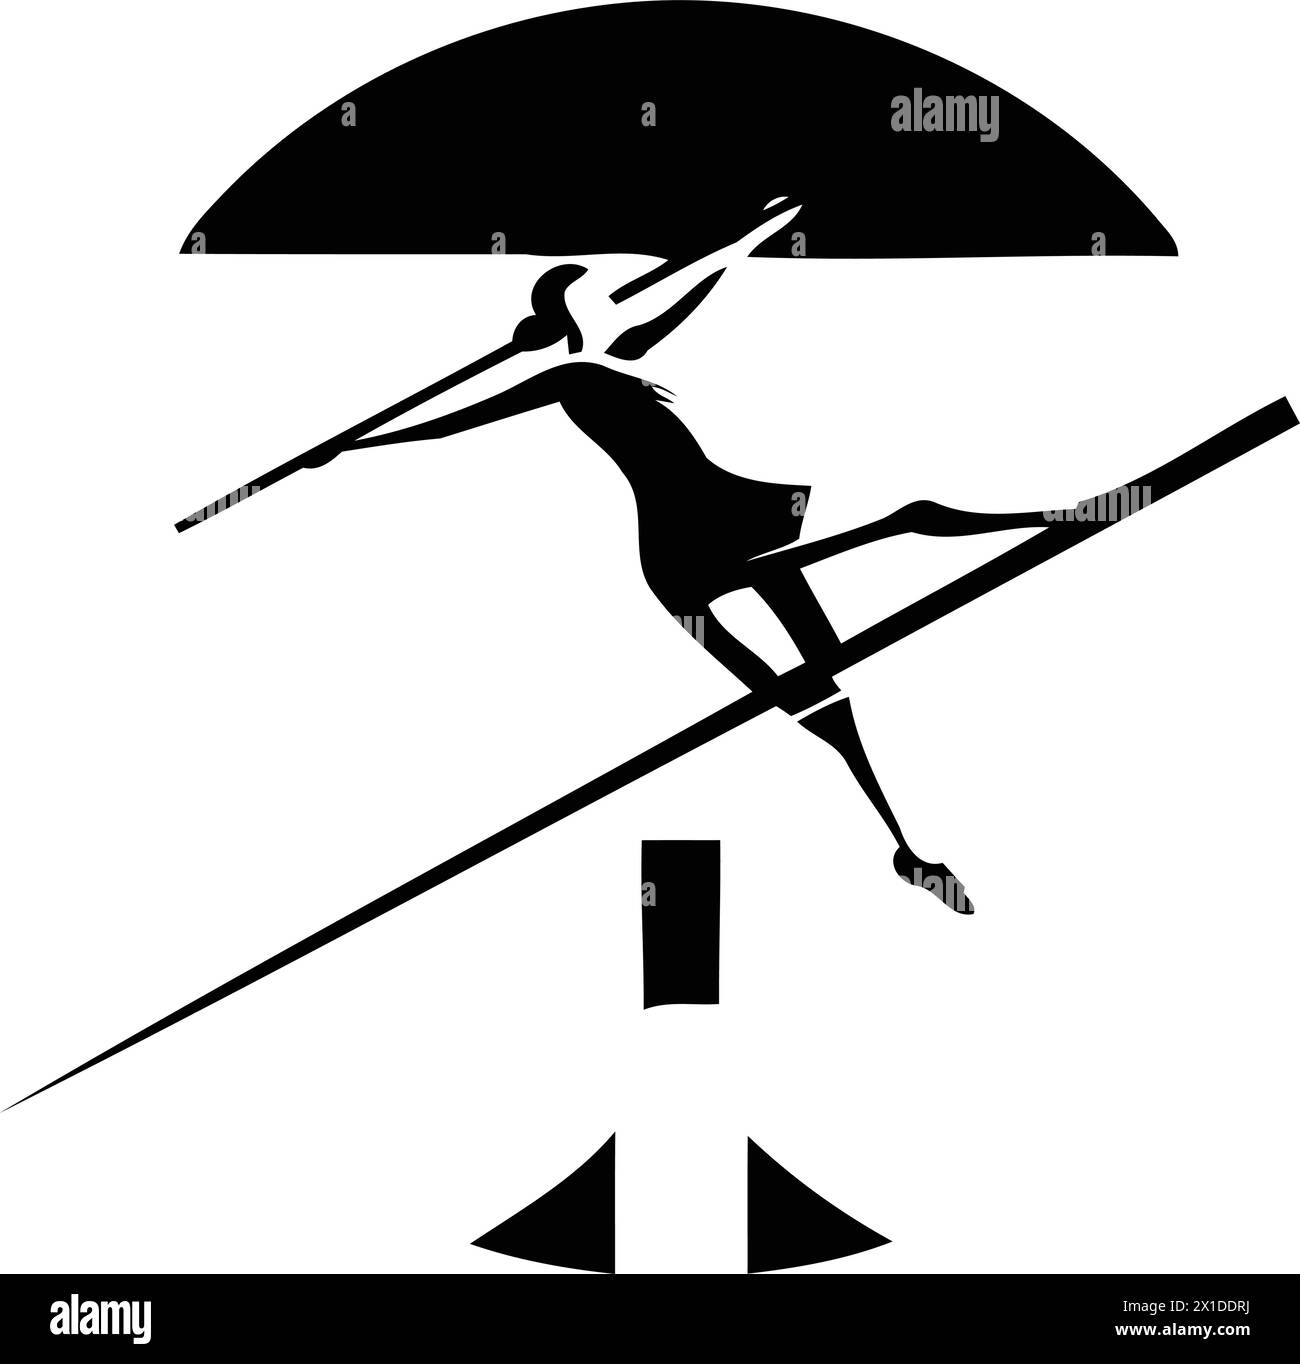 Designvorlage für Skisprung-Logo. Ein Skier springt in die Luft Stock Vektor